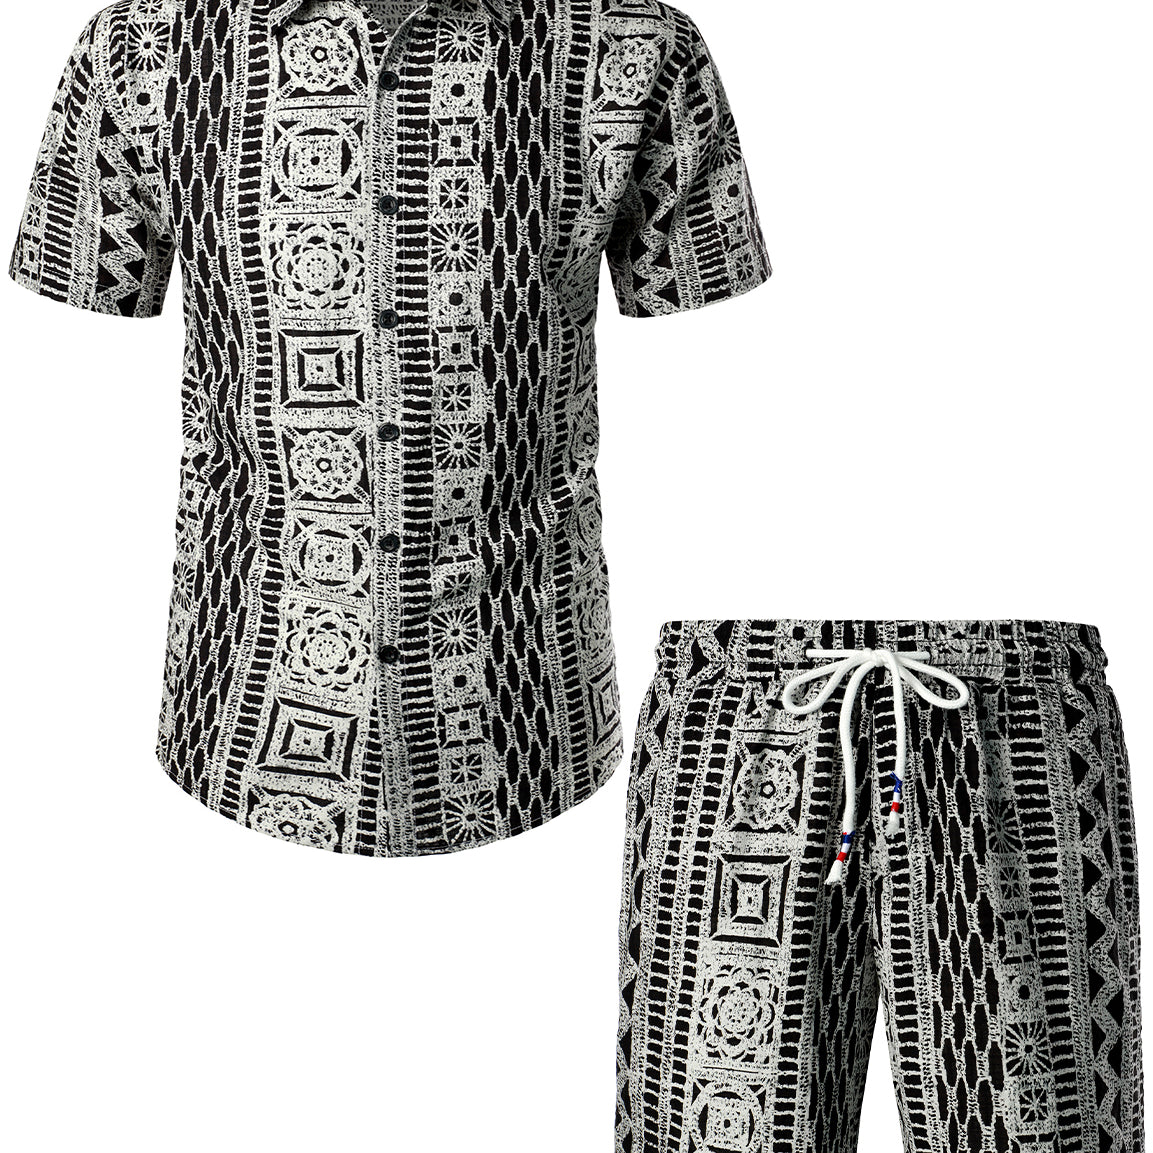 Men's Casual Vintage Boho Shirt and Shorts Set